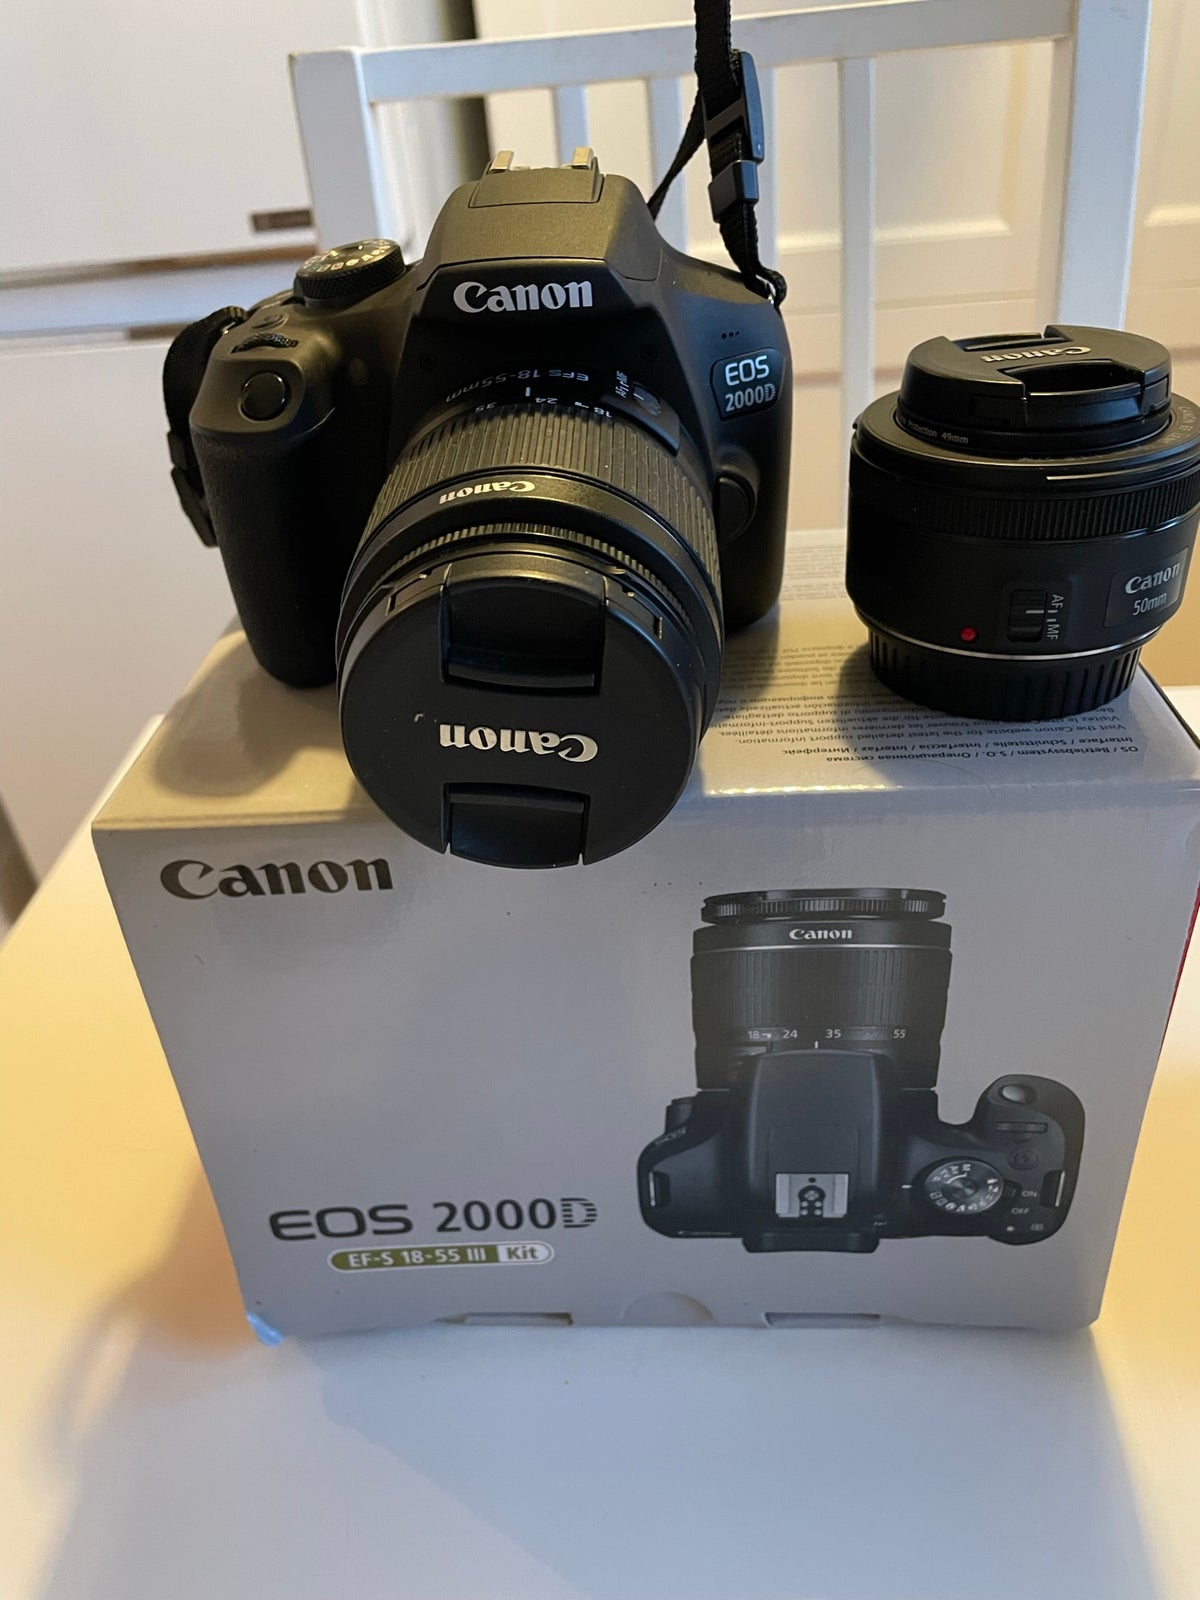 Canon, Canon eos2000d, 24.1 megapixels